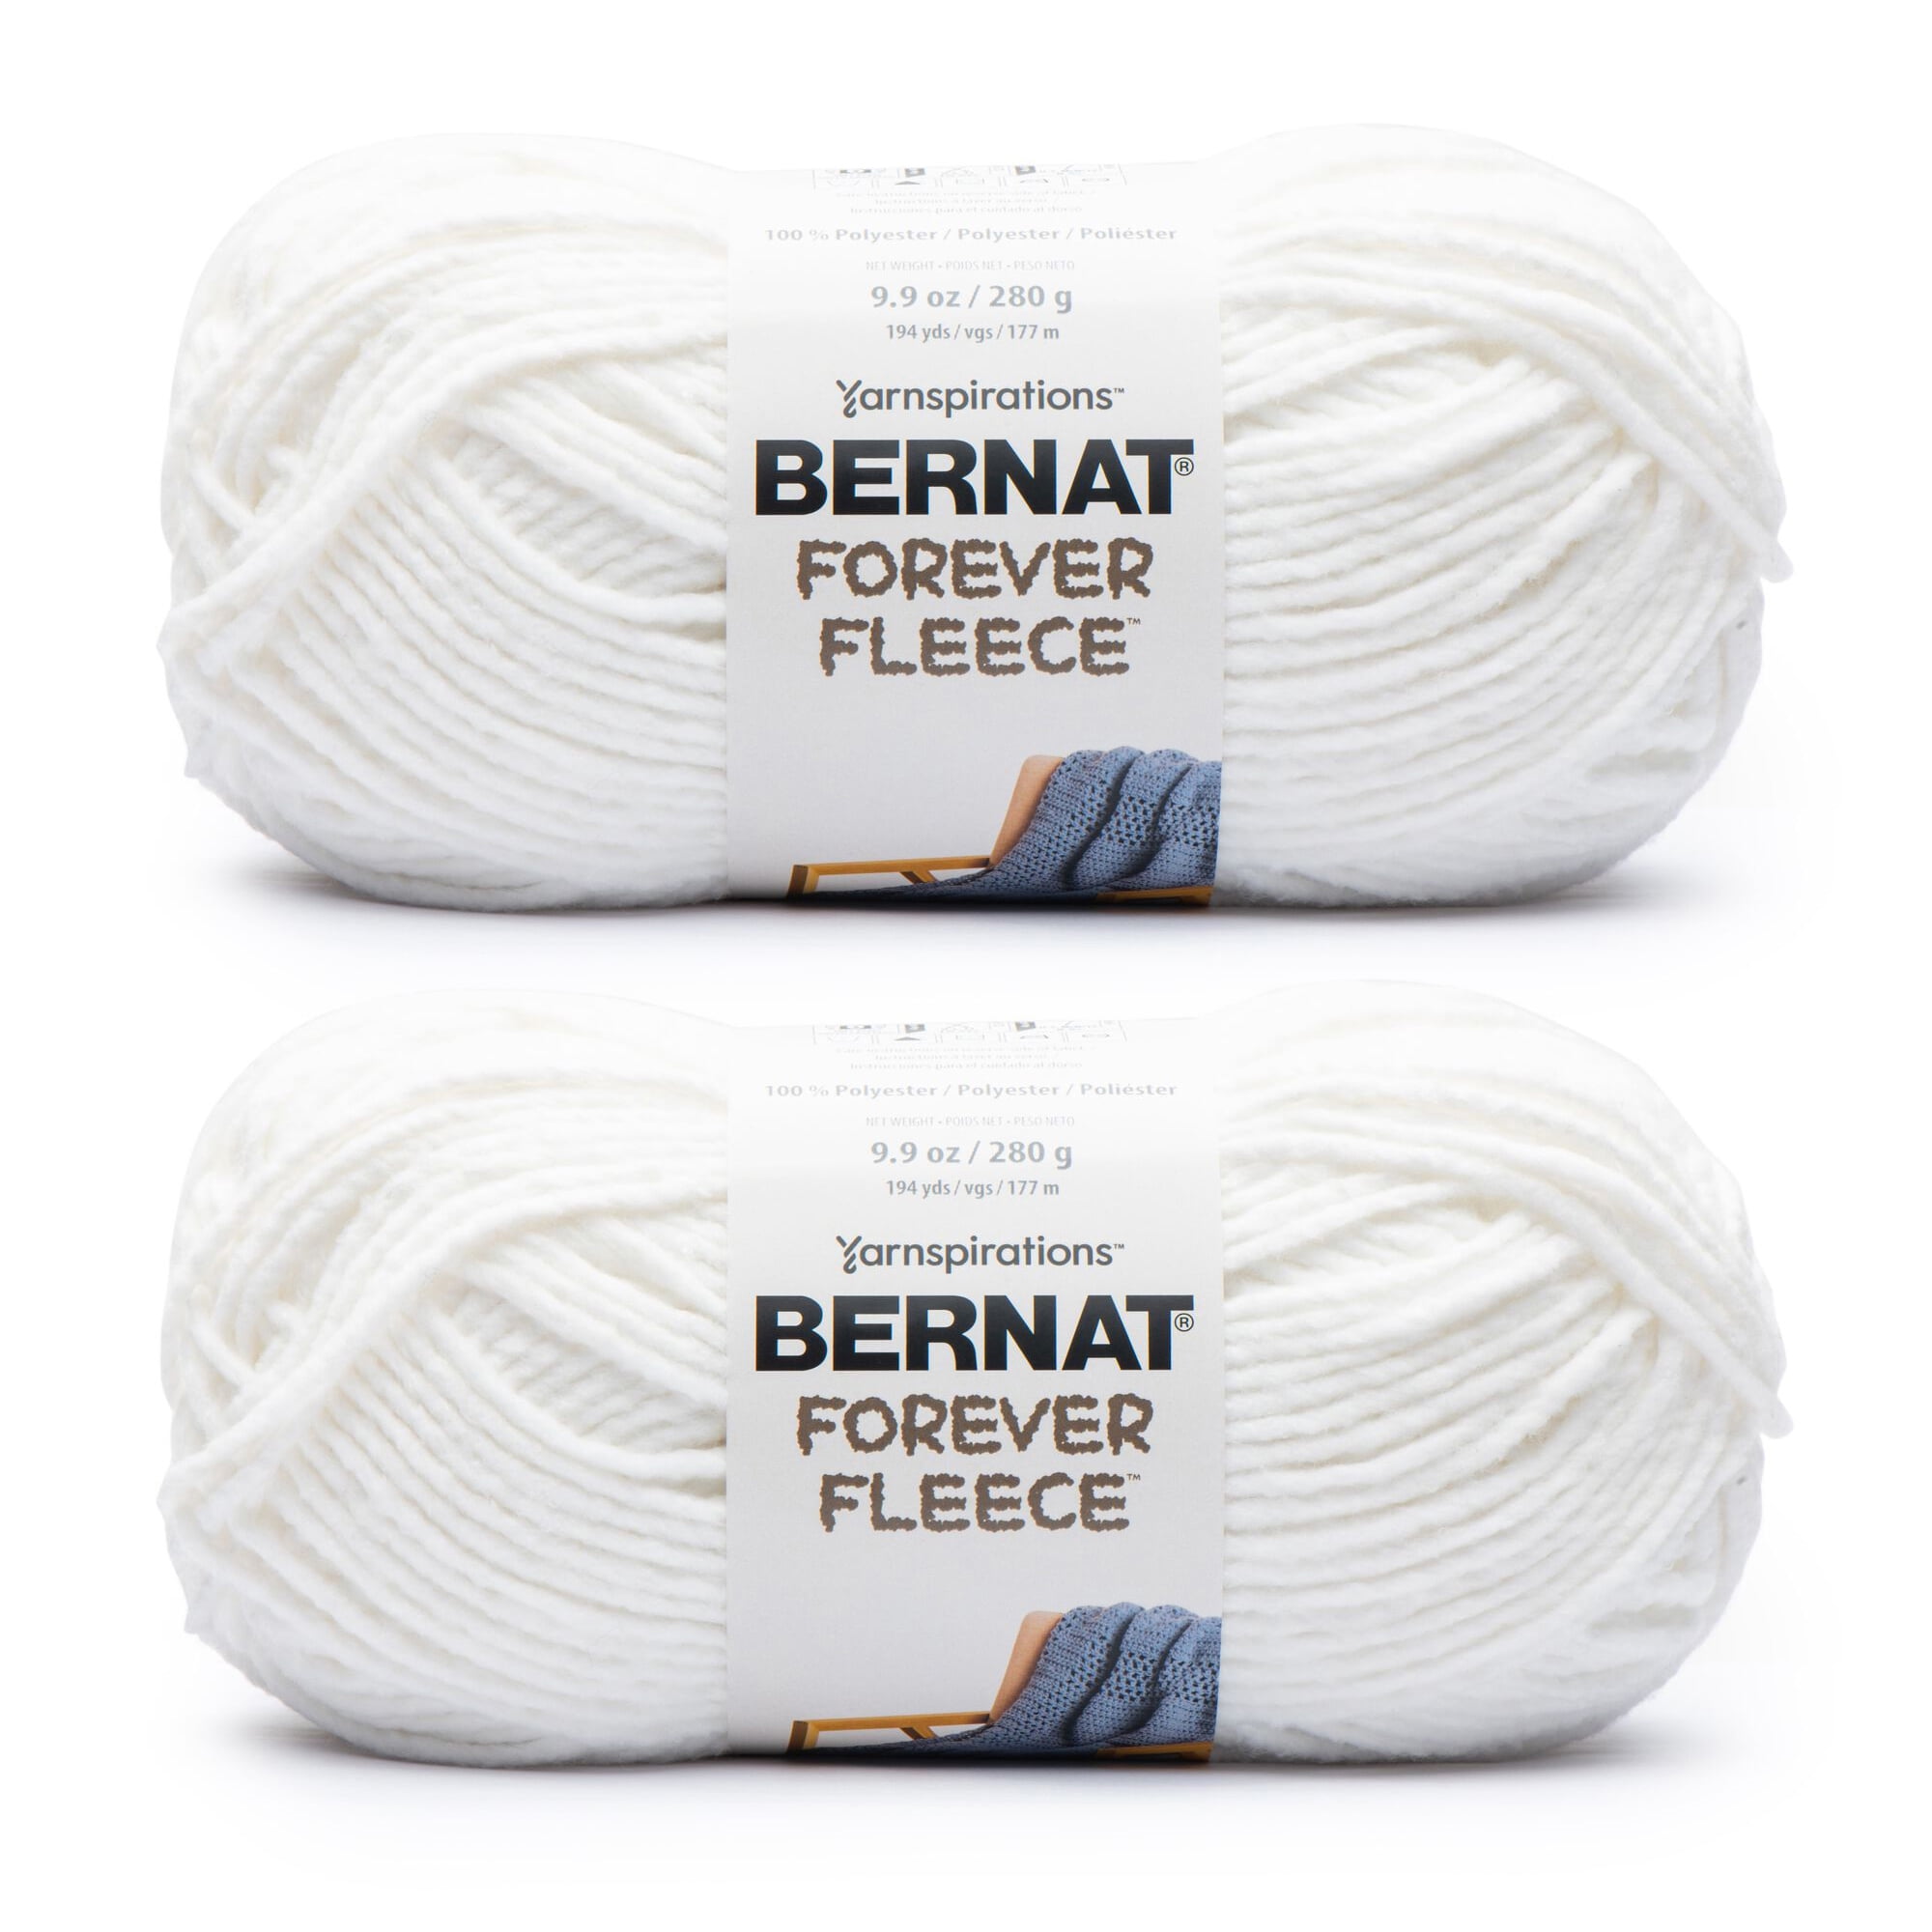 Bernat Forever Fleece Yarn - NOTM652855